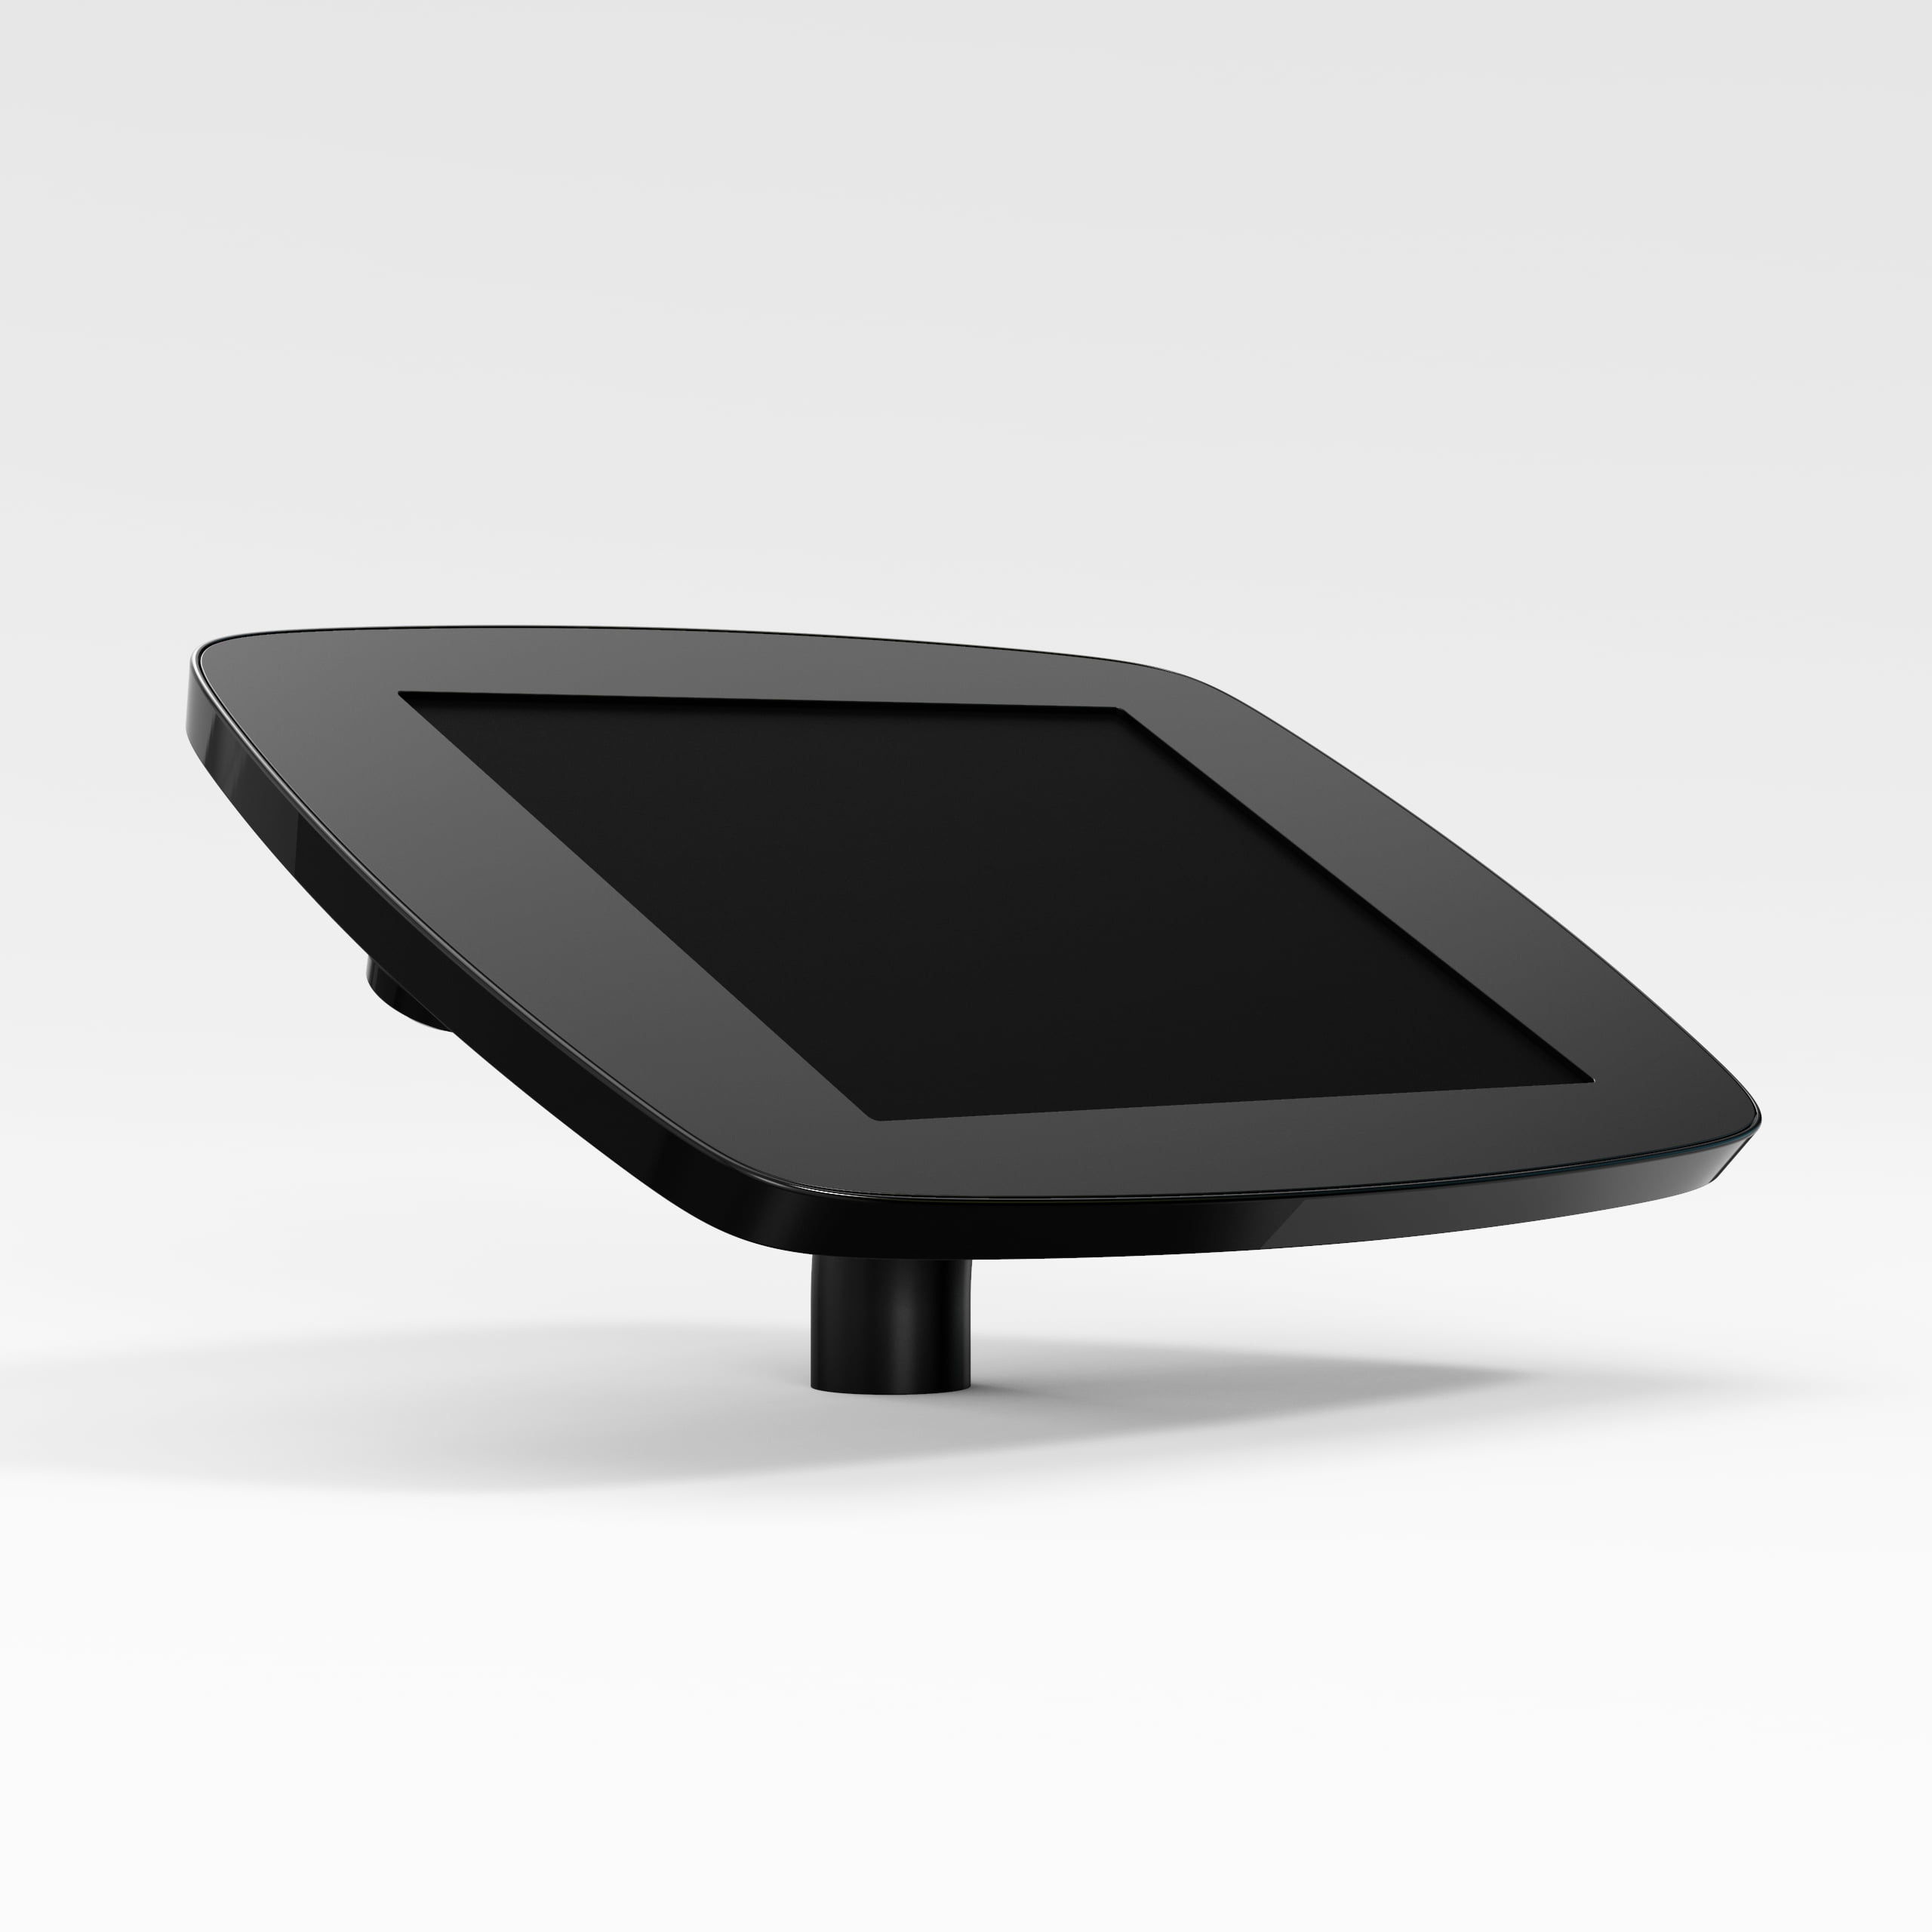 Bouncepad Desk supporto antifurto per tablet 25,6 cm [10.1] Nero (DESKBLKCLOSEDCAM/CLOSEDHOME A62)